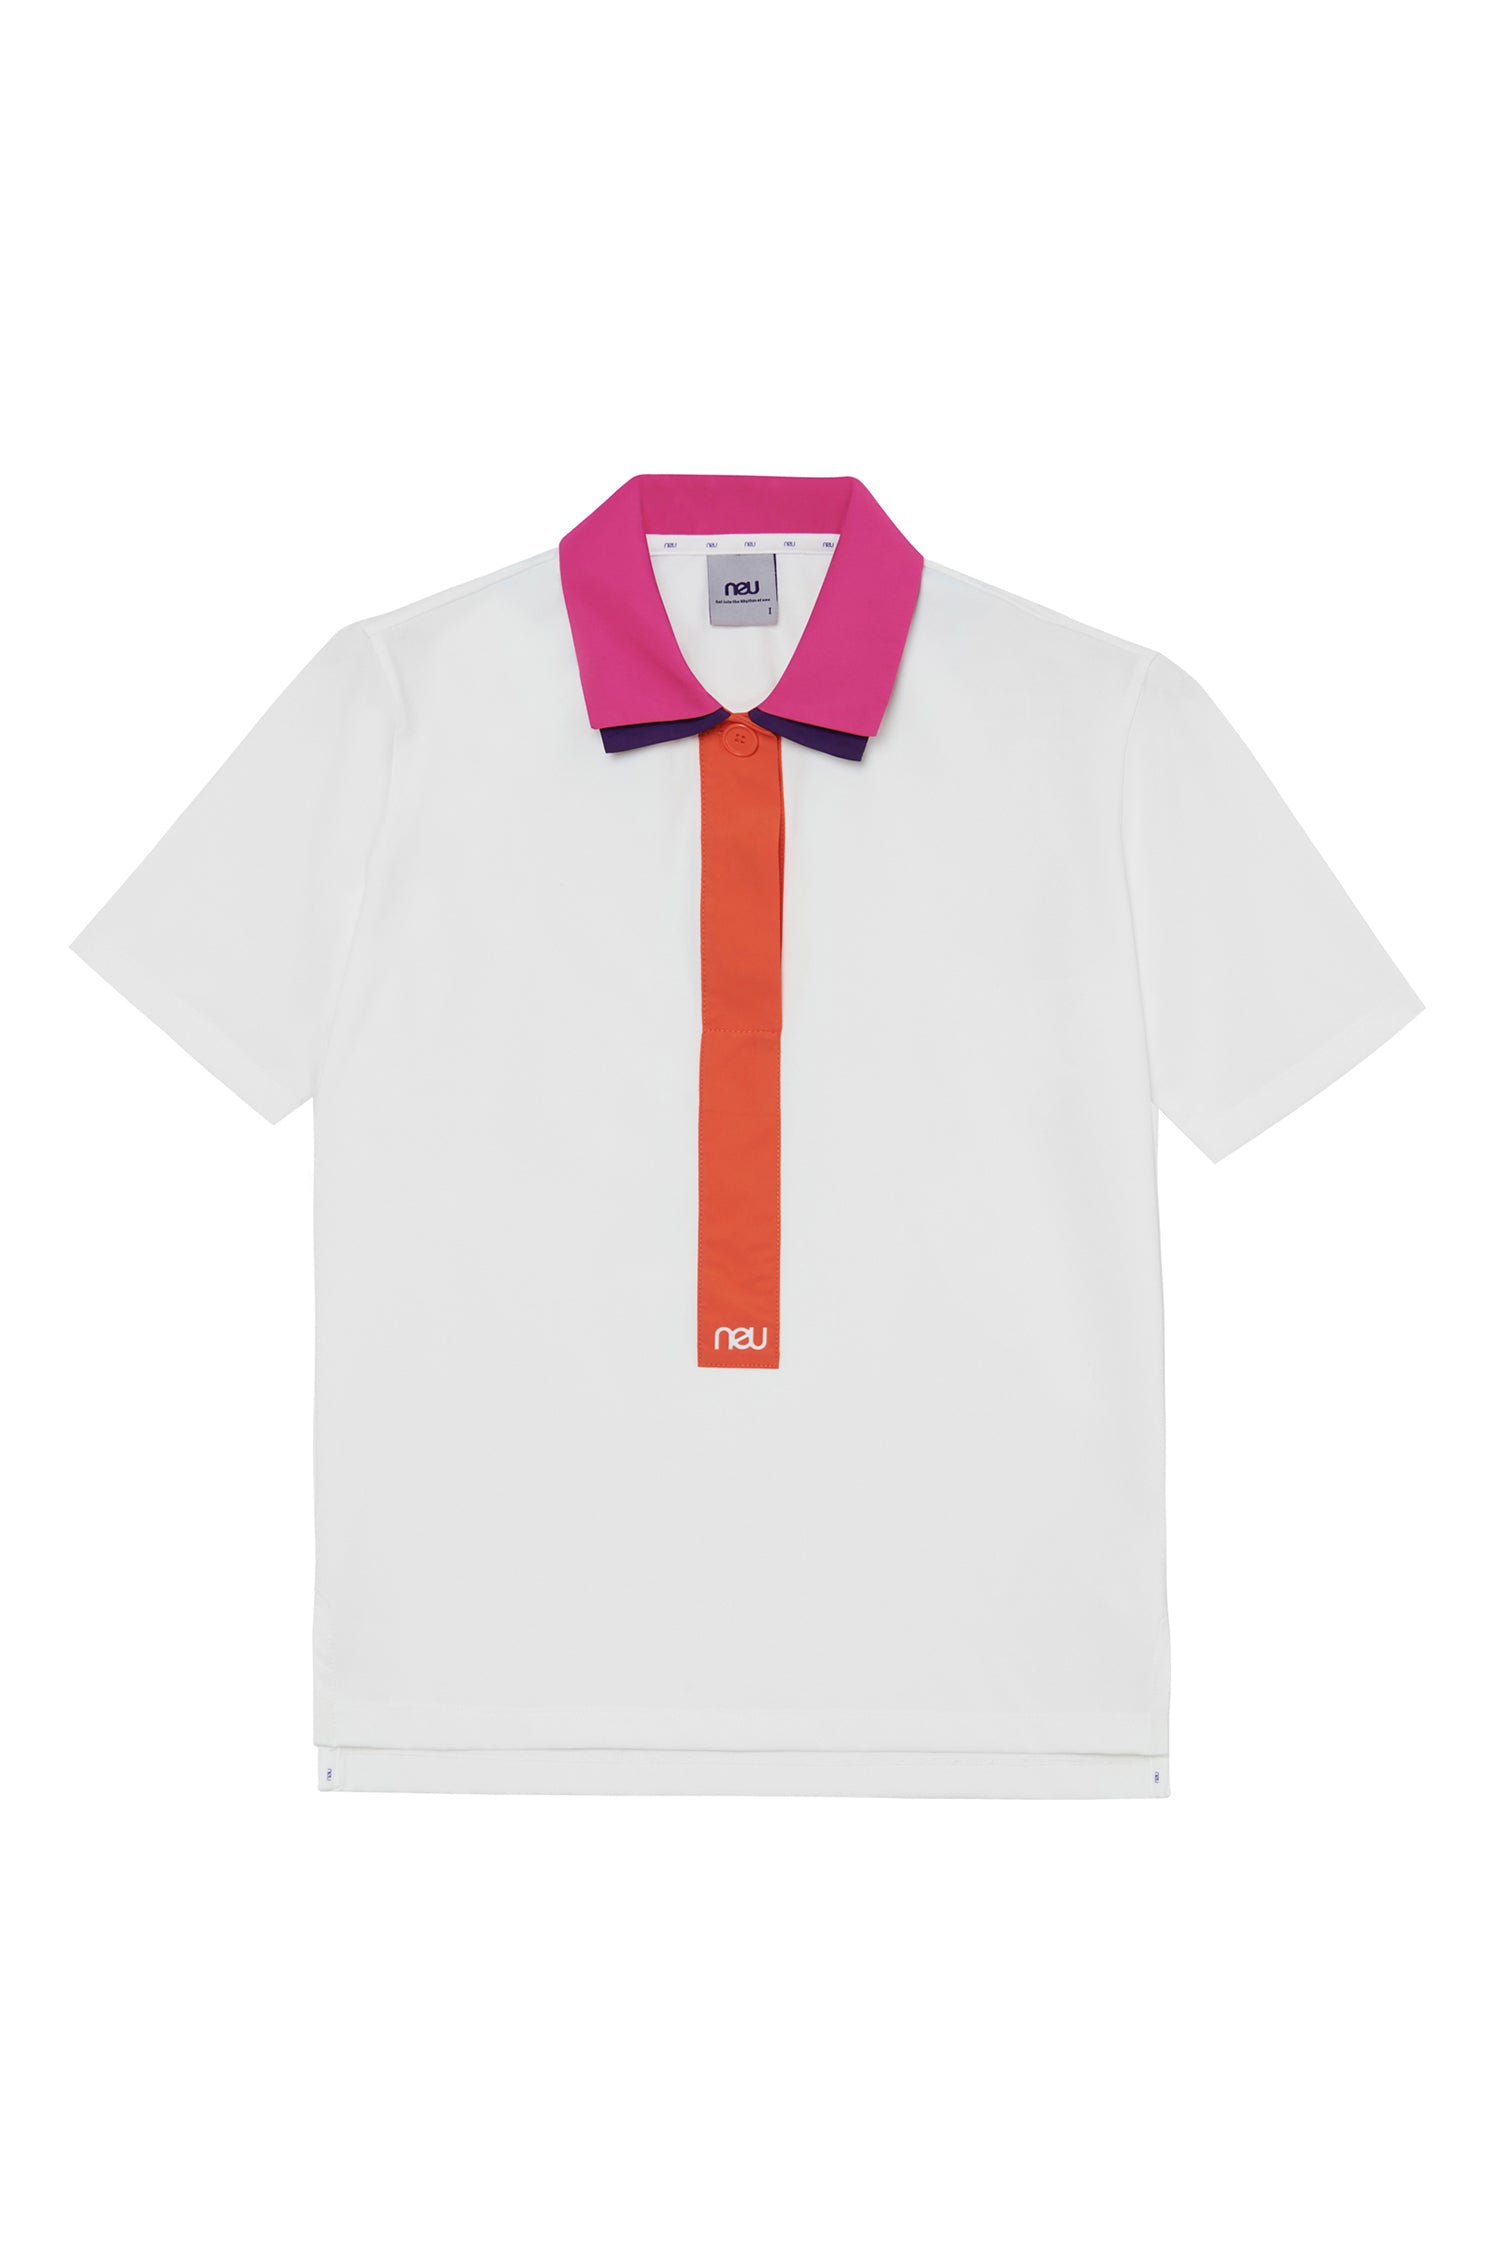 NEU Golf Double Collar T Shirt Pink